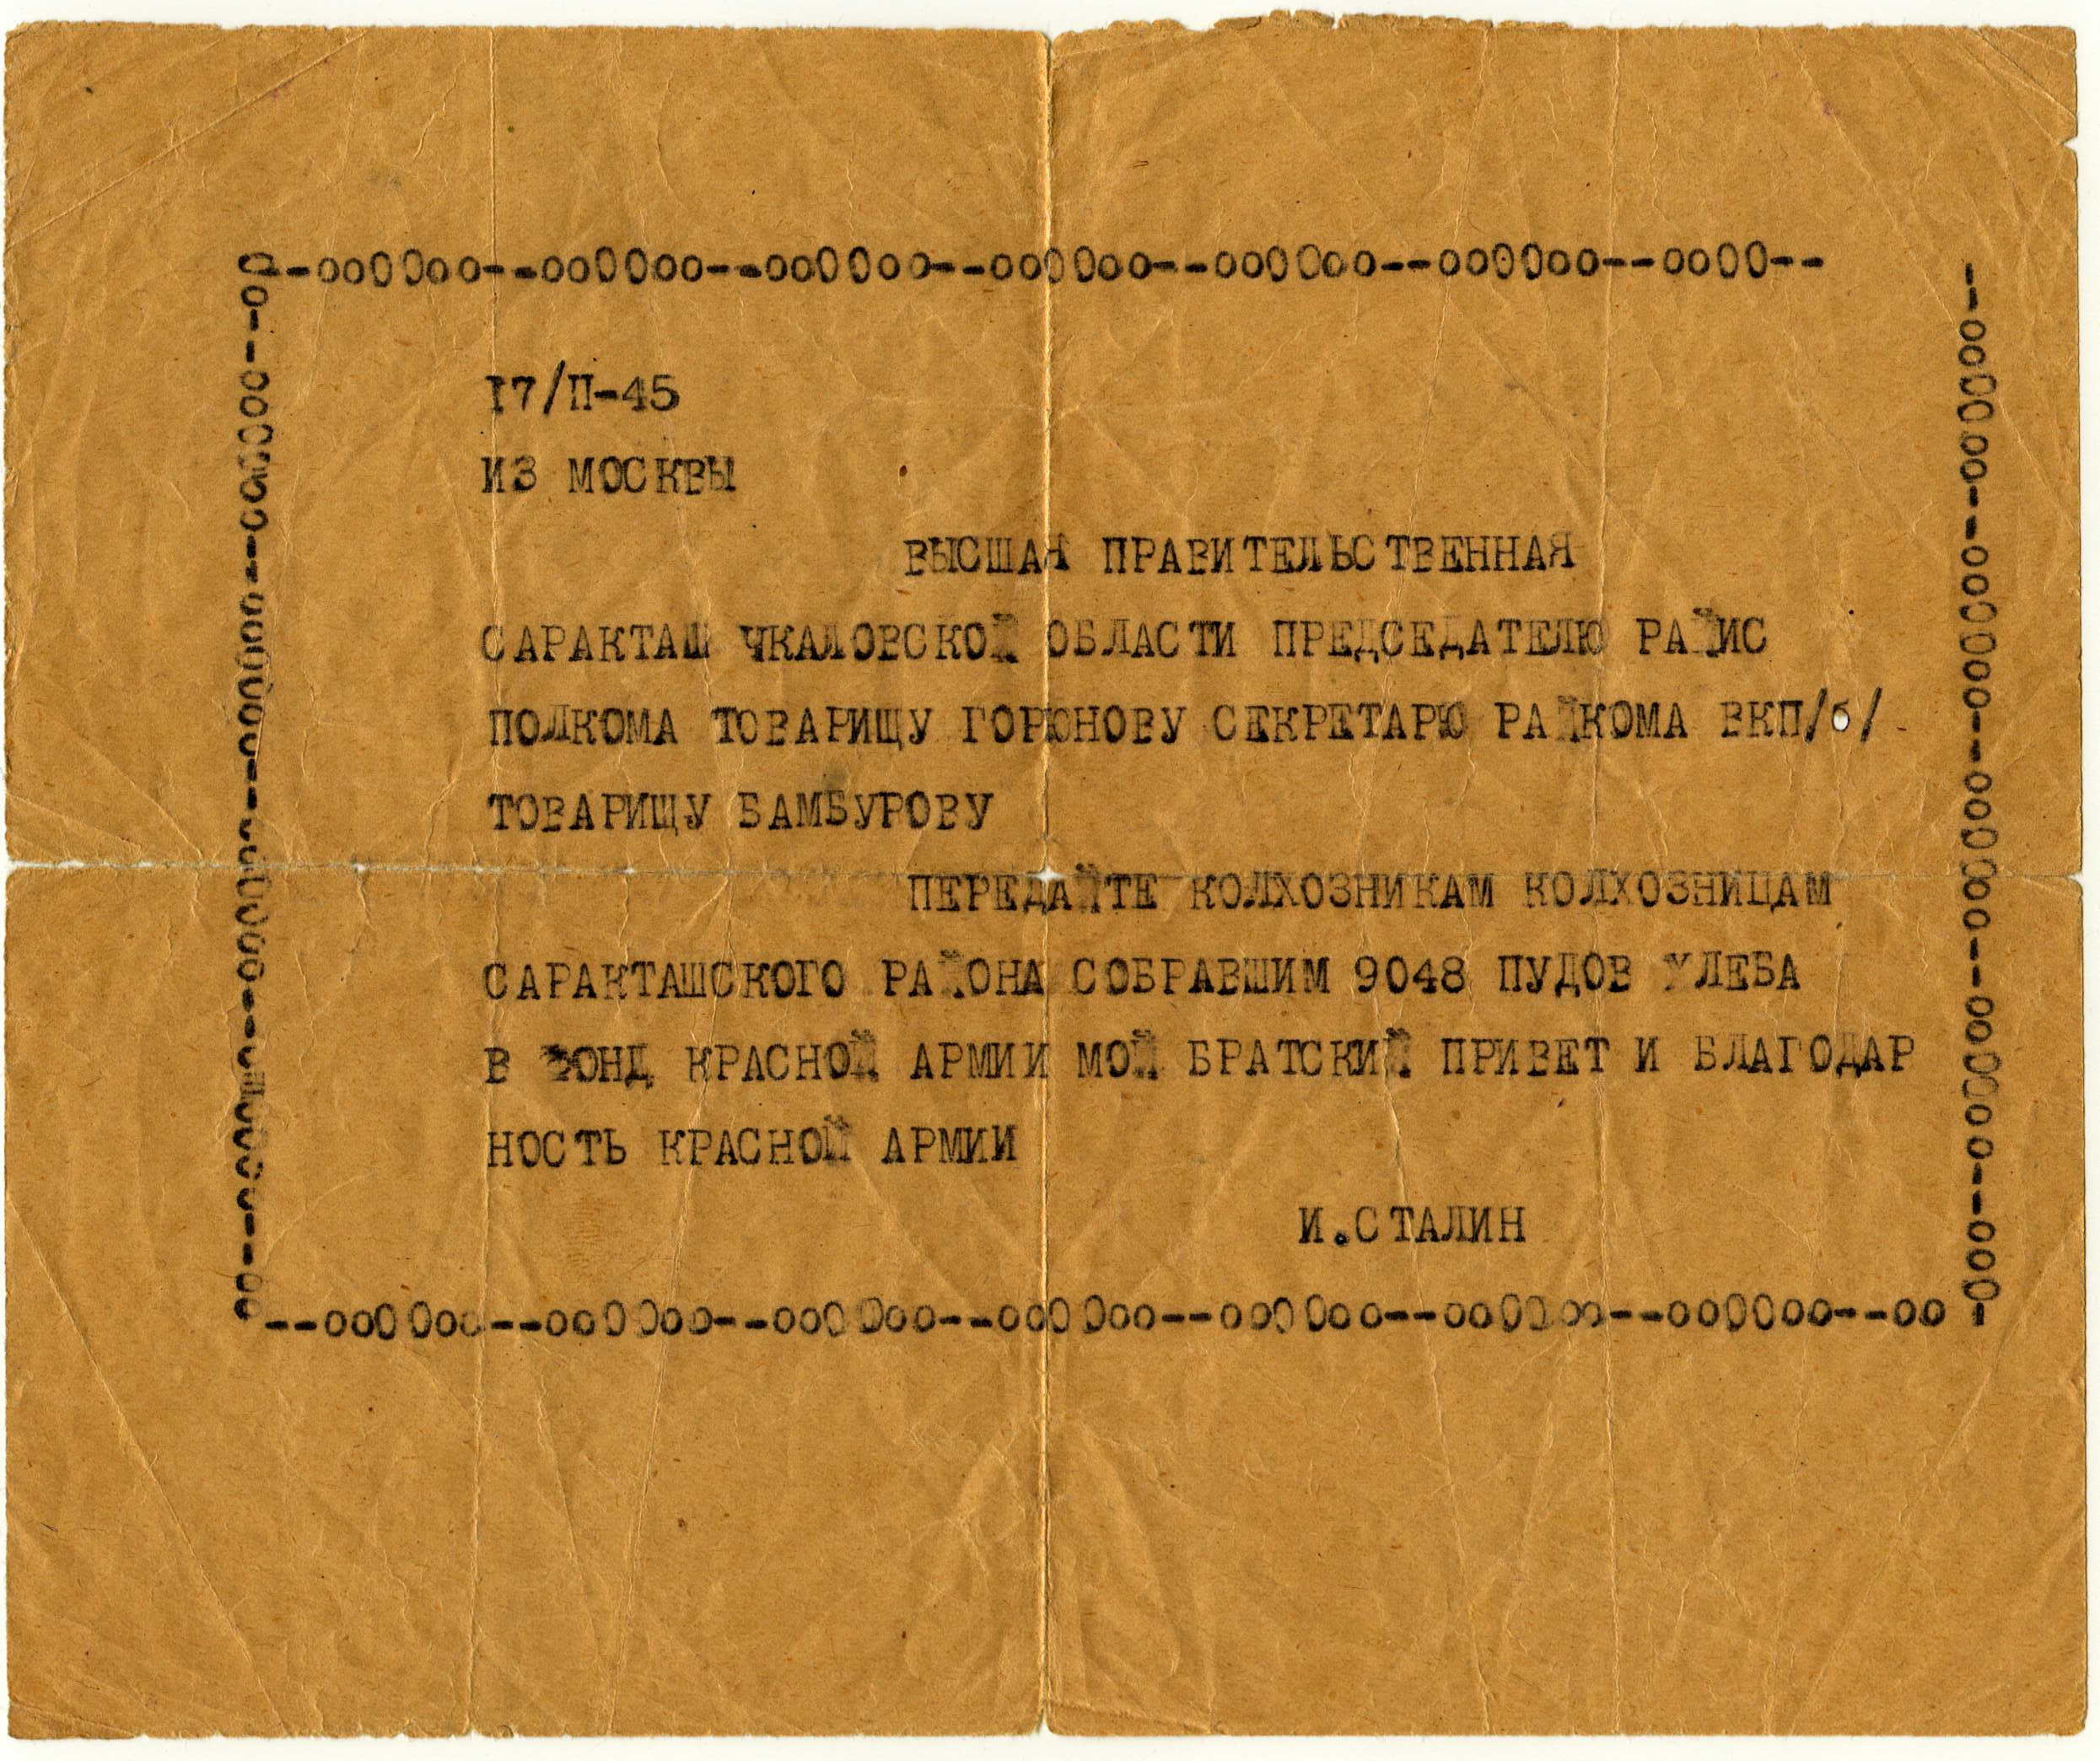 Поздравительная телеграмма от И. Сталина колхозникам Саракташа датированная 1945 годом